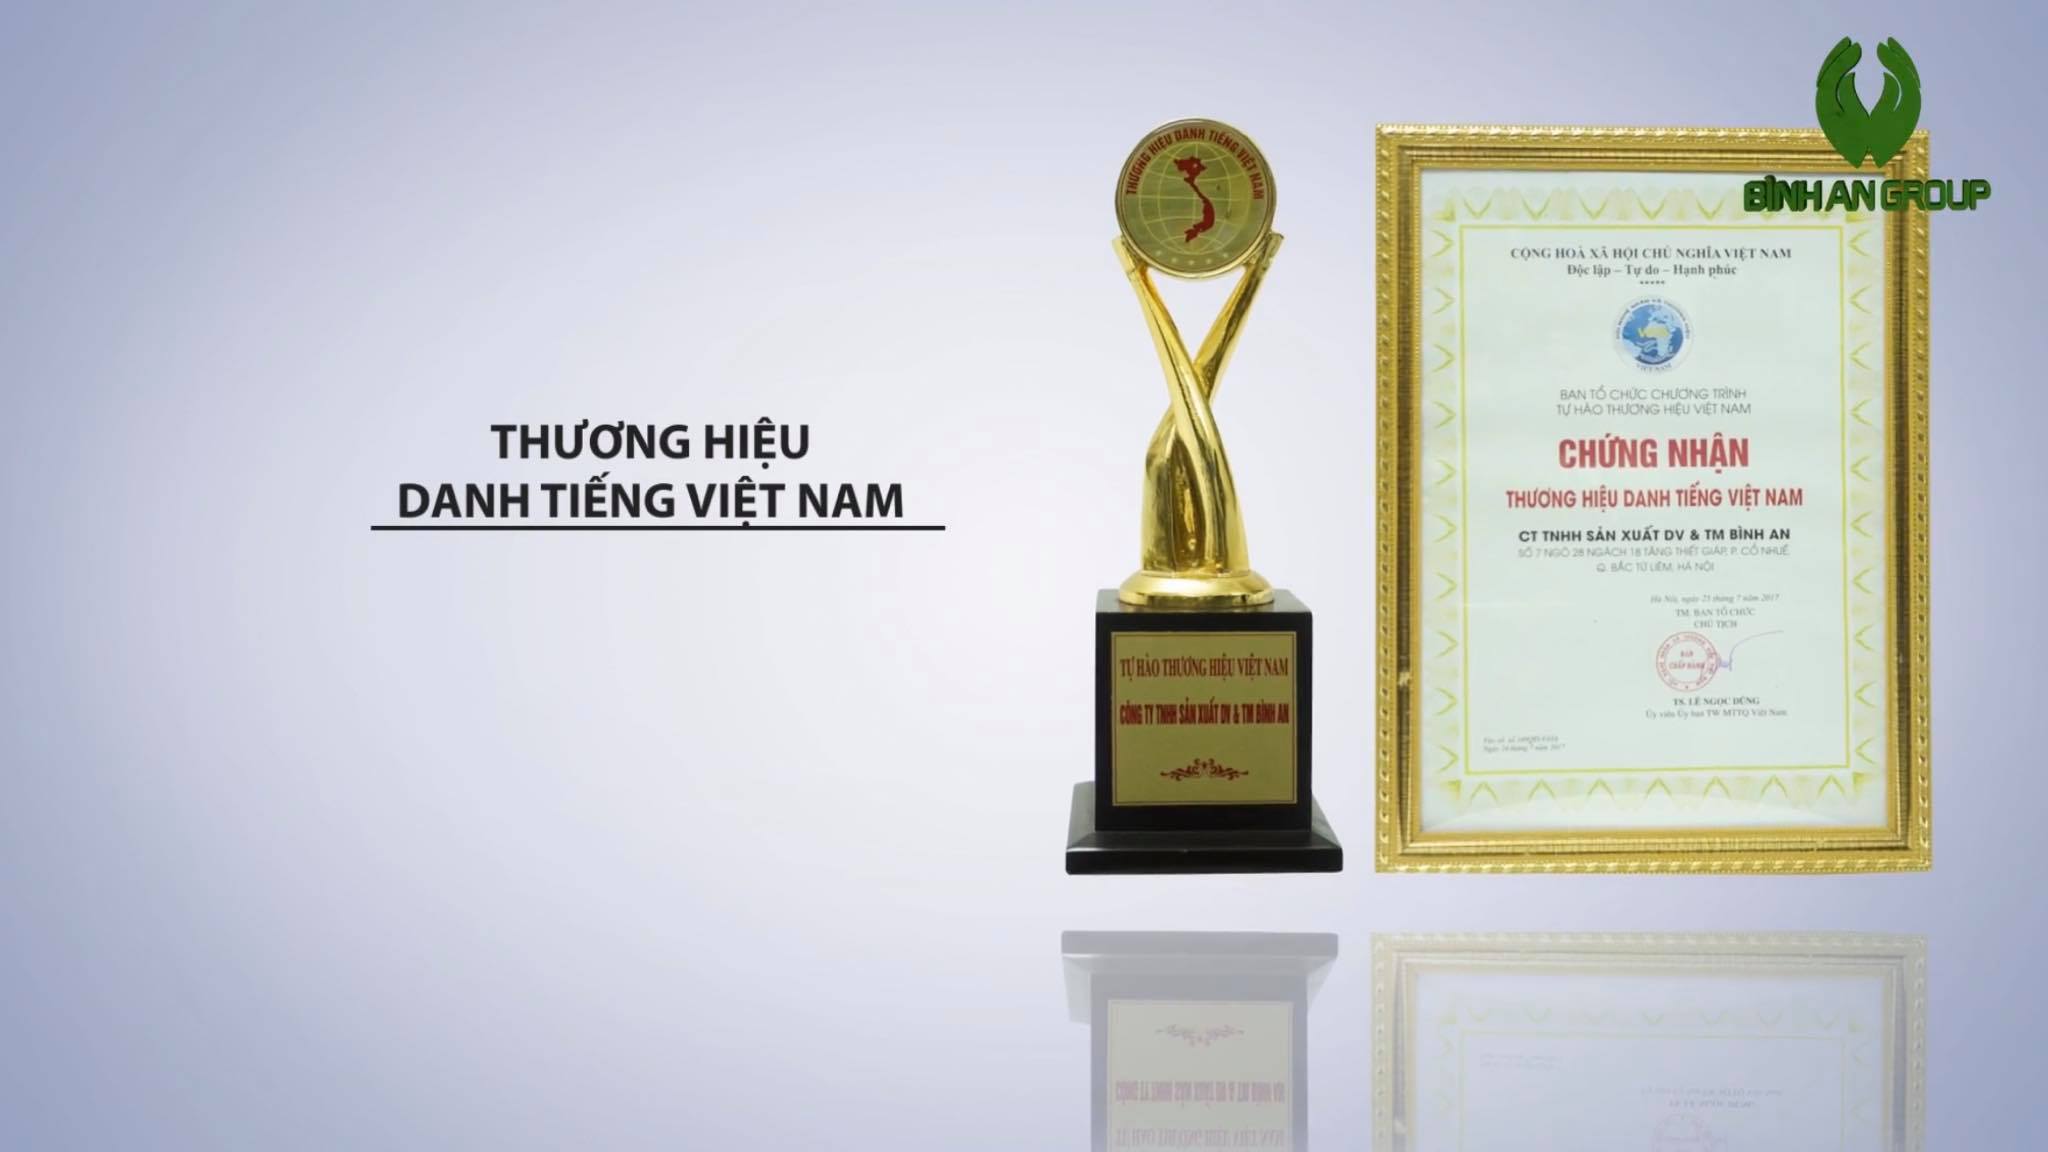 Thương Hiệu Danh Tiếng Việt Nam